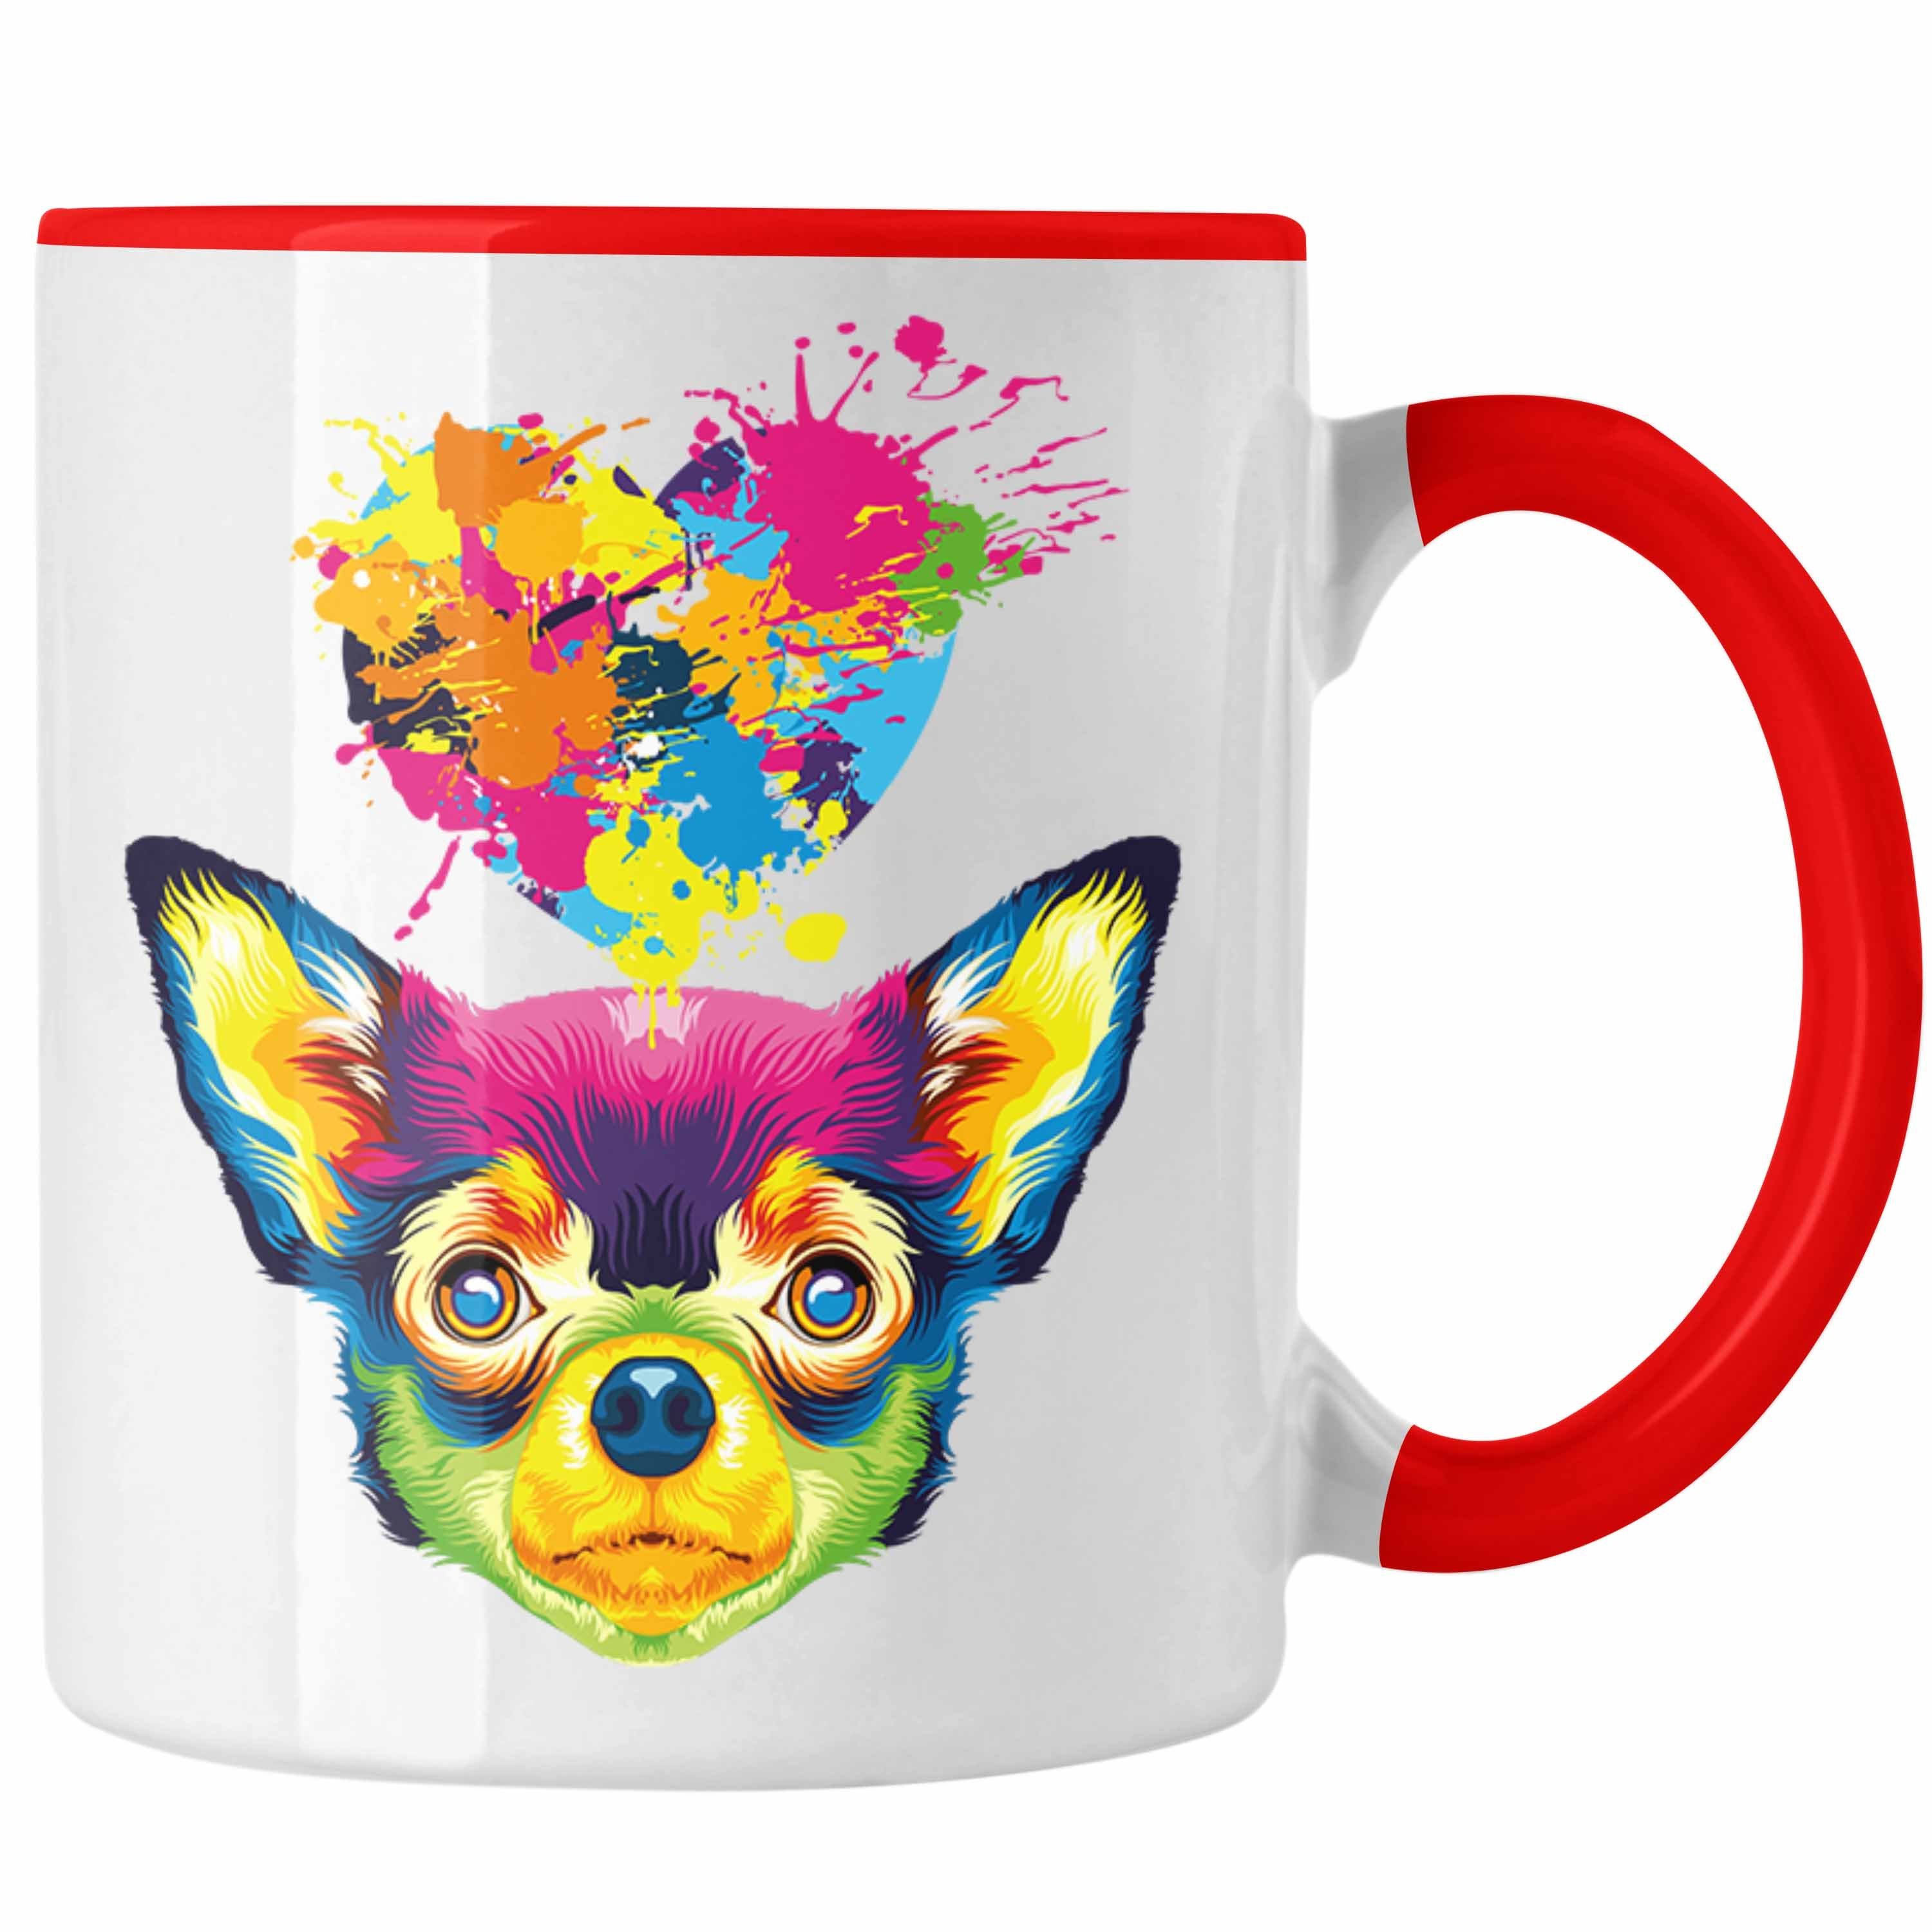 Trendation Tasse Besitzer Geschenki Spruch Lustiger Farbe Geschenk Chihuahua Tasse Rot Herz